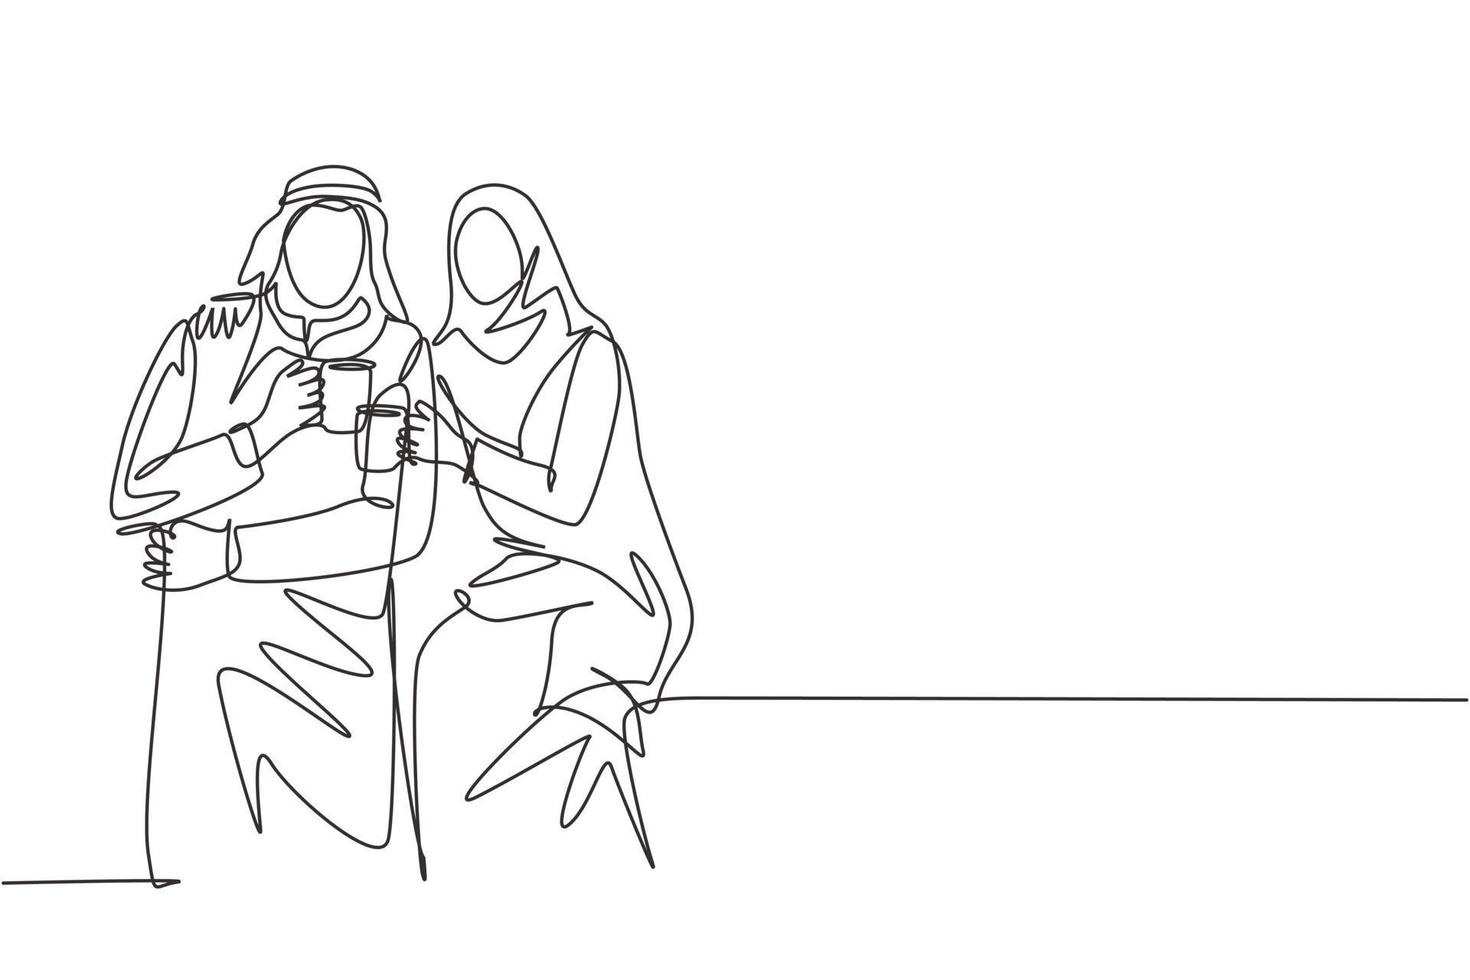 Eine durchgehende Strichzeichnung eines jungen muslimischen und muslimischen Paares posiert romantisch zusammen, während sie eine Tasse Kaffee hält. islamische kleidung shmagh, kandura, schal. einzeilige designillustration vektor